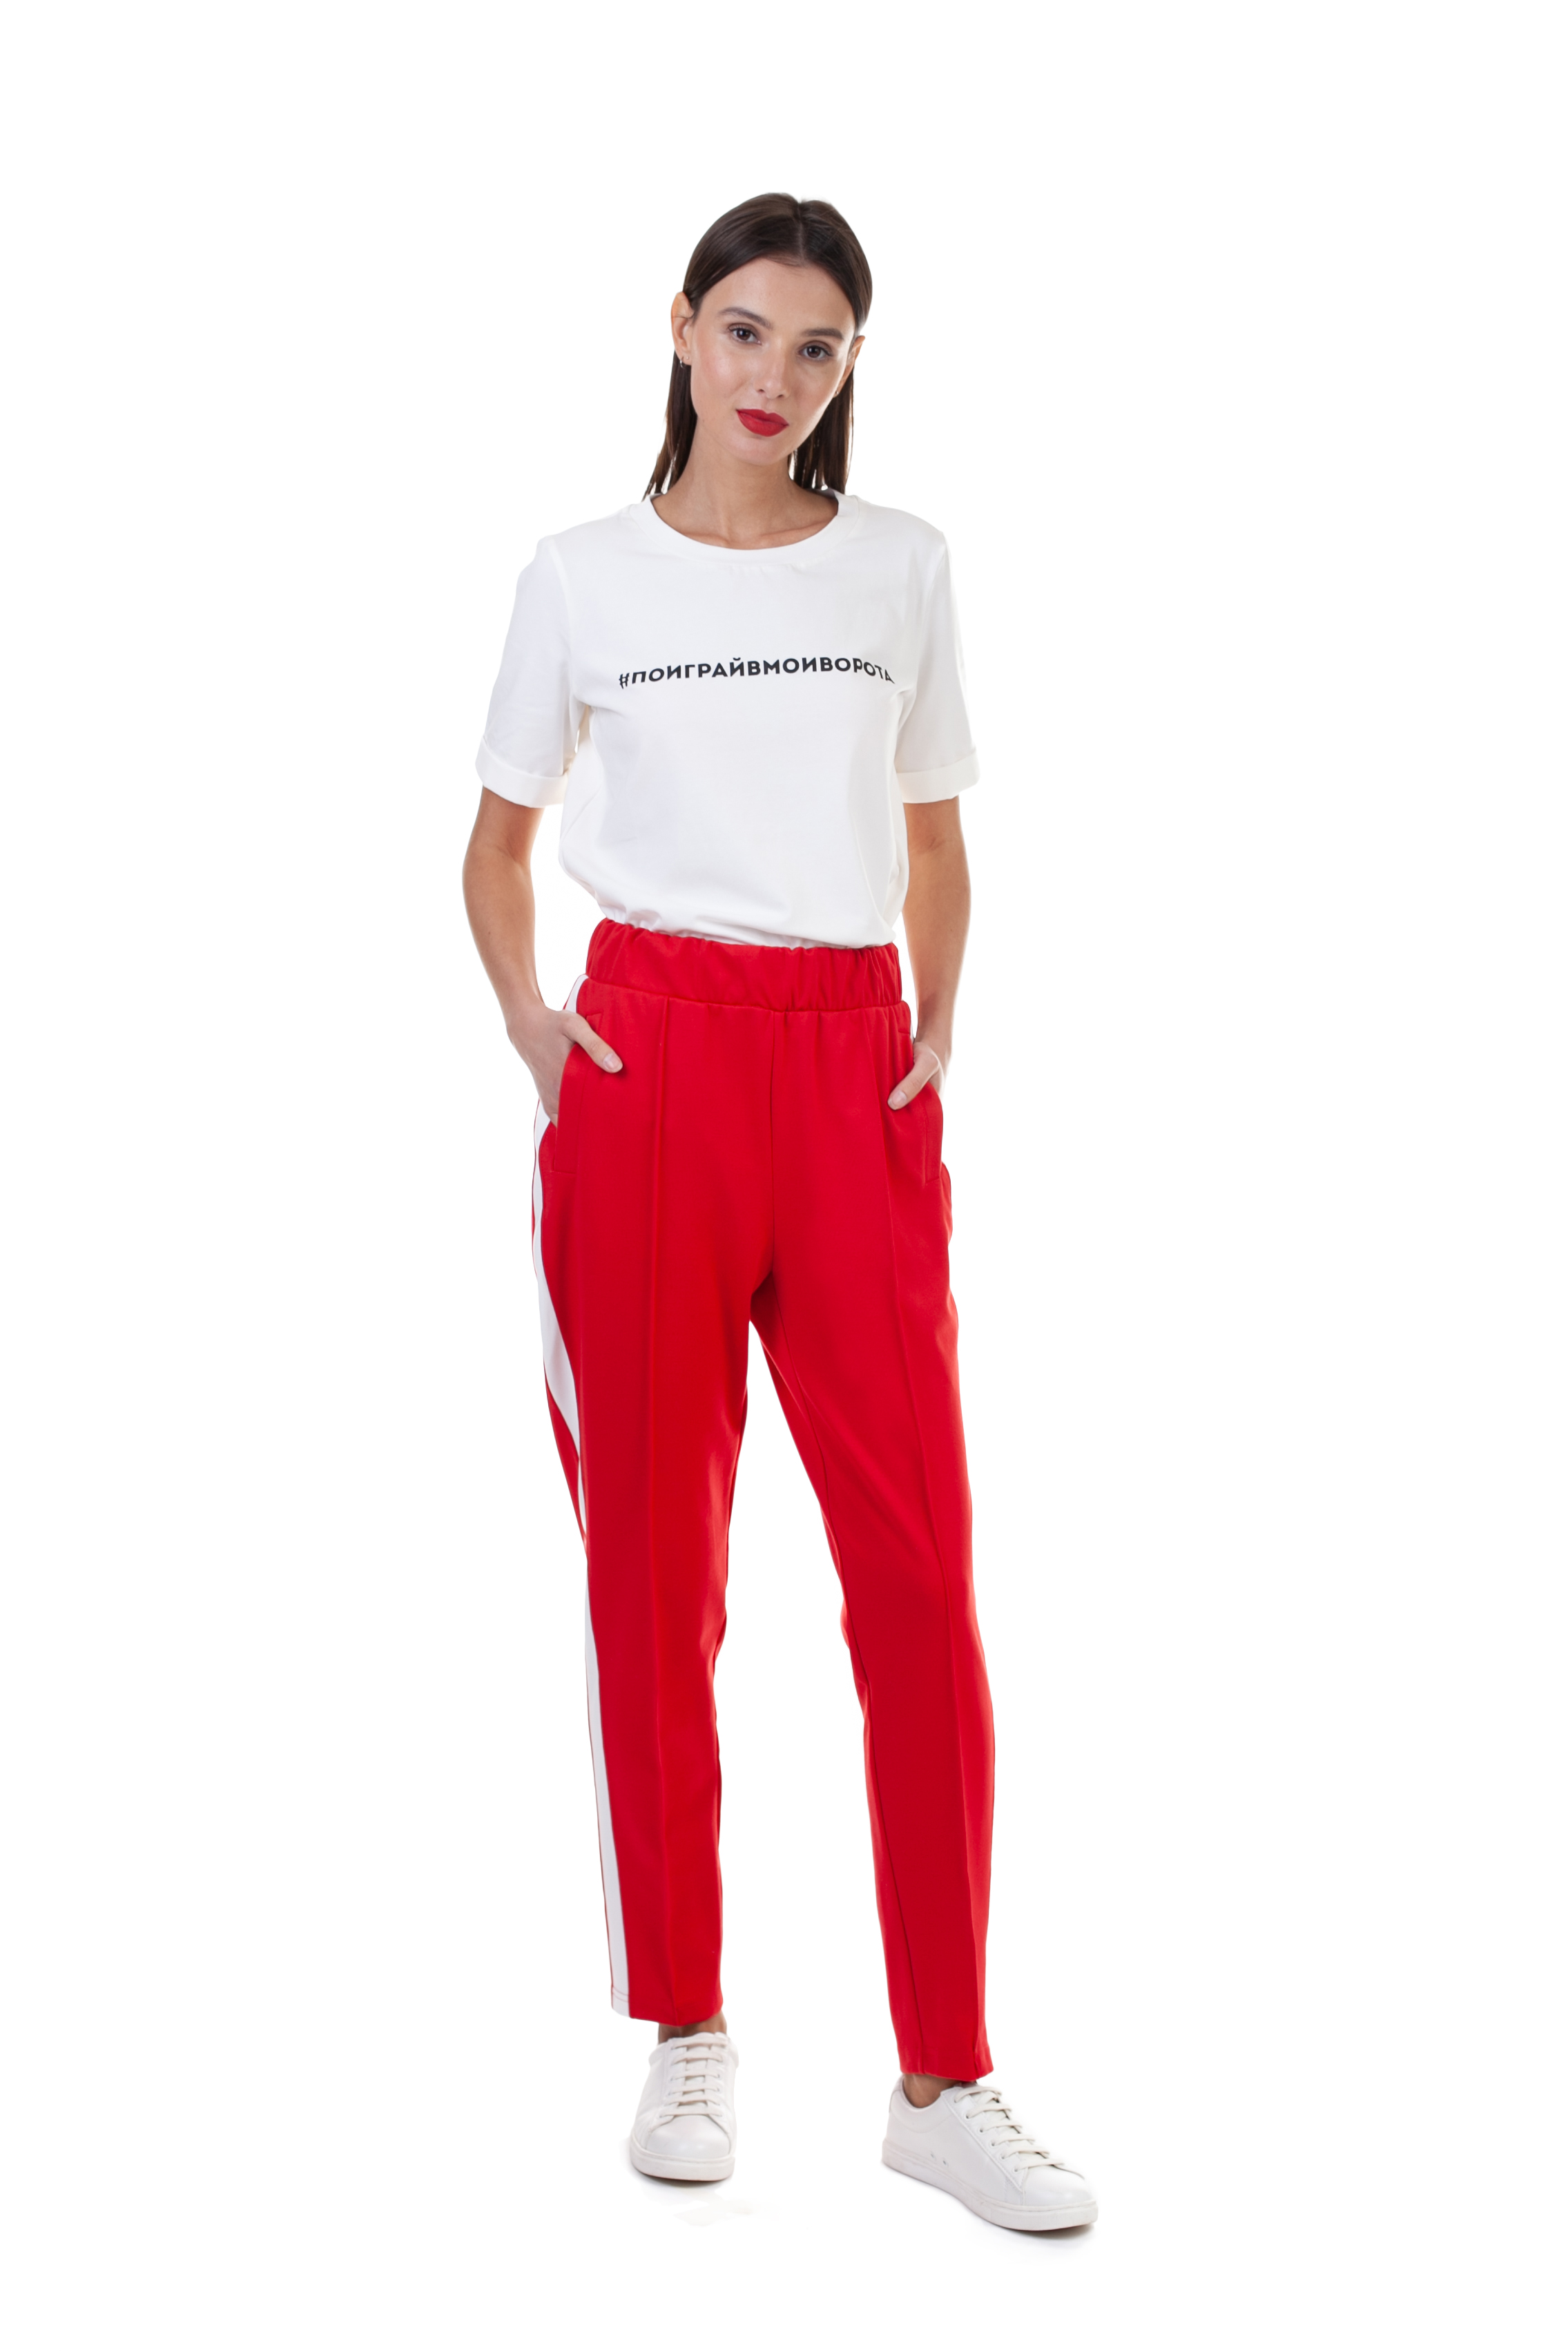 Трикотажные брюки (арт. baon B298051), размер M, цвет красный Трикотажные брюки (арт. baon B298051) - фото 4